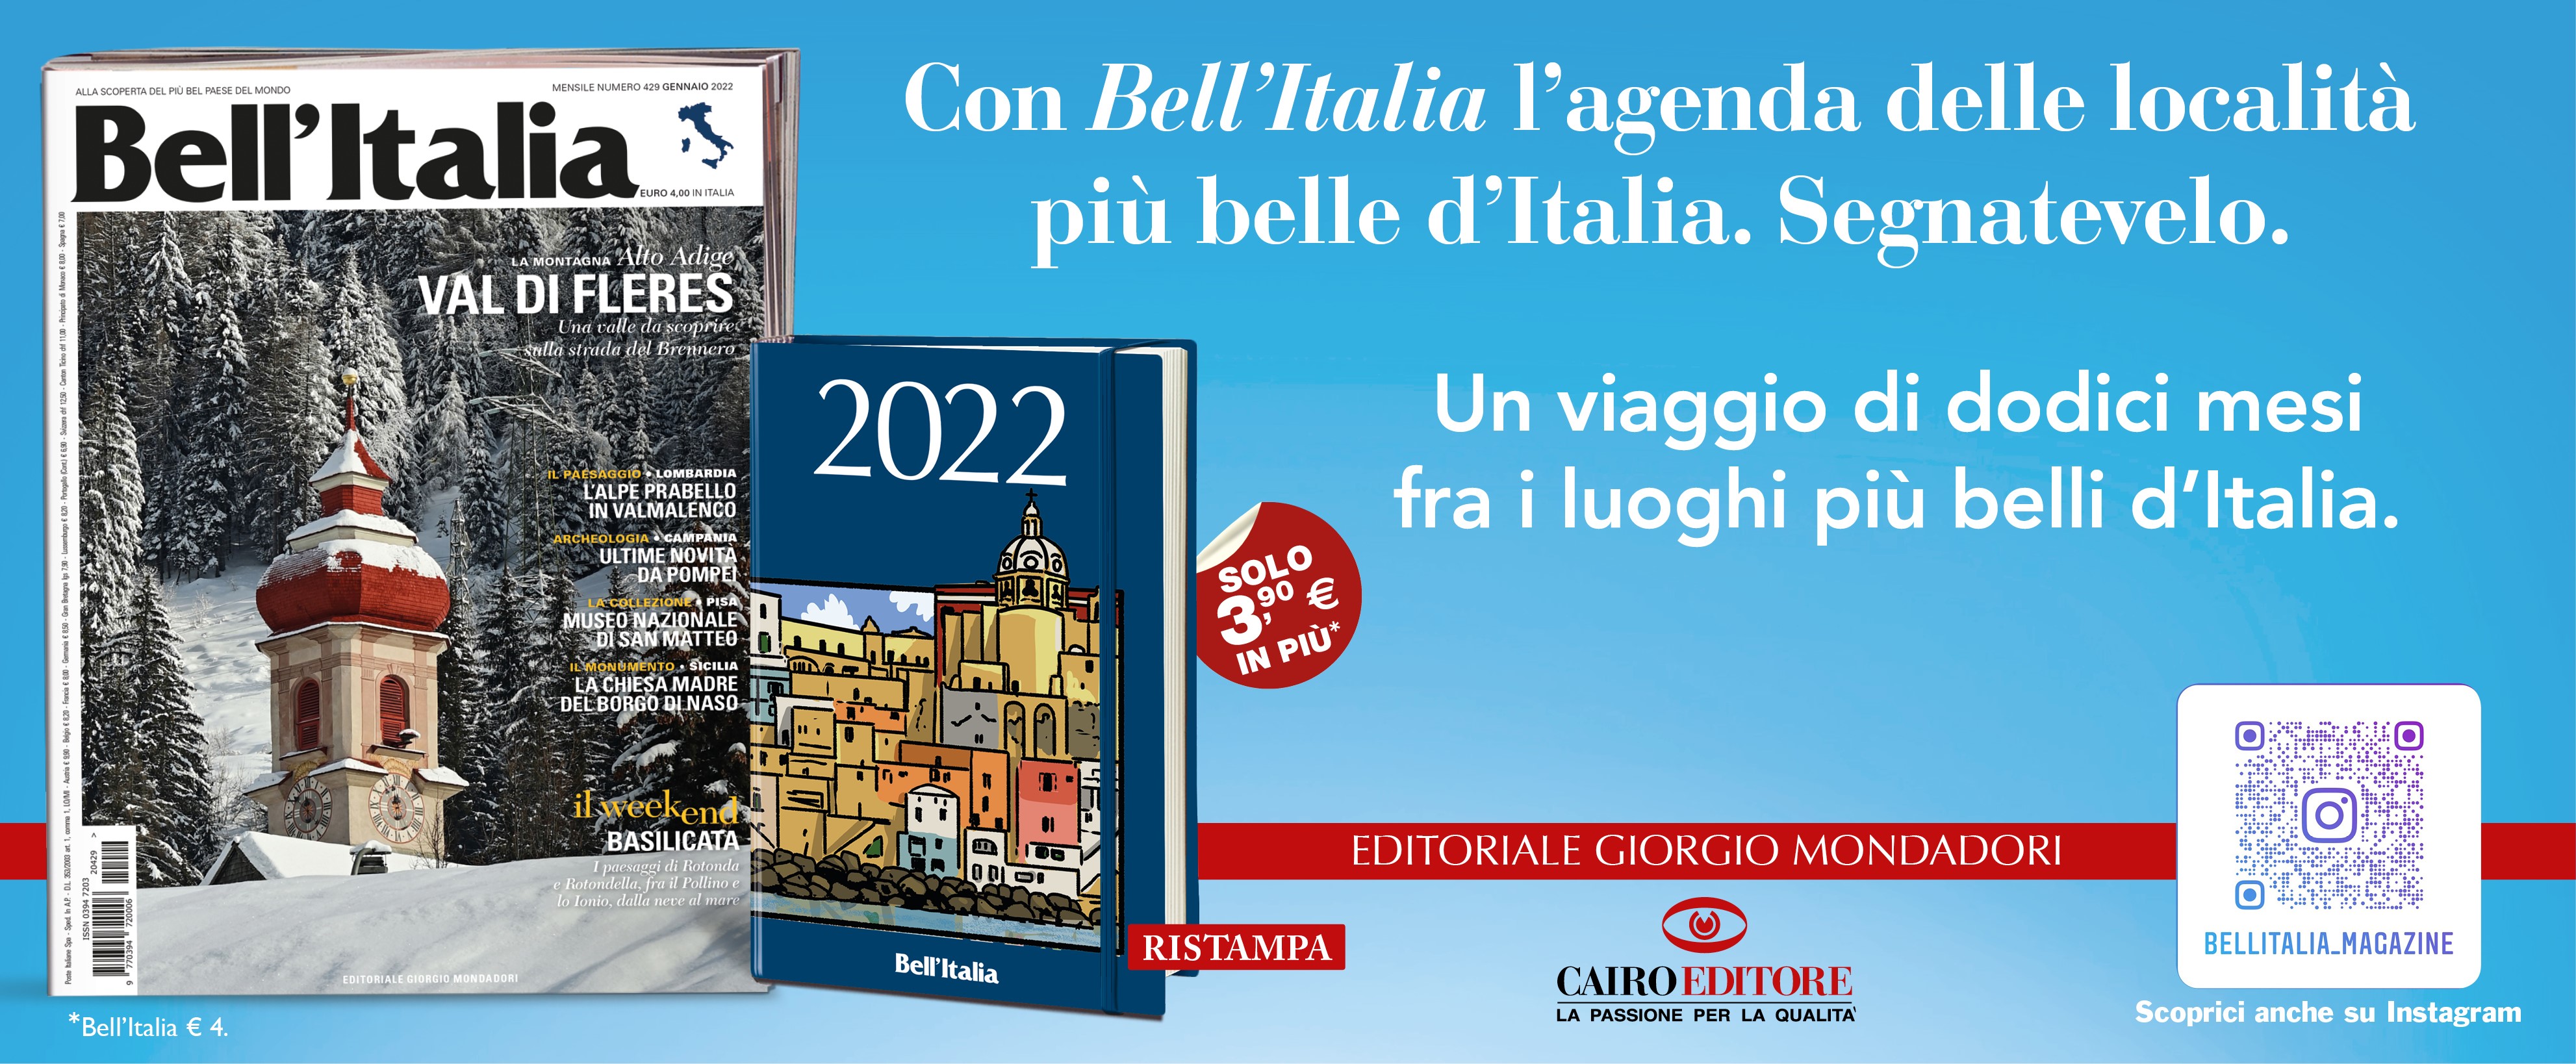 Con Bell’Italia l’agenda delle località più belle d’Italia. Segnatevelo. 